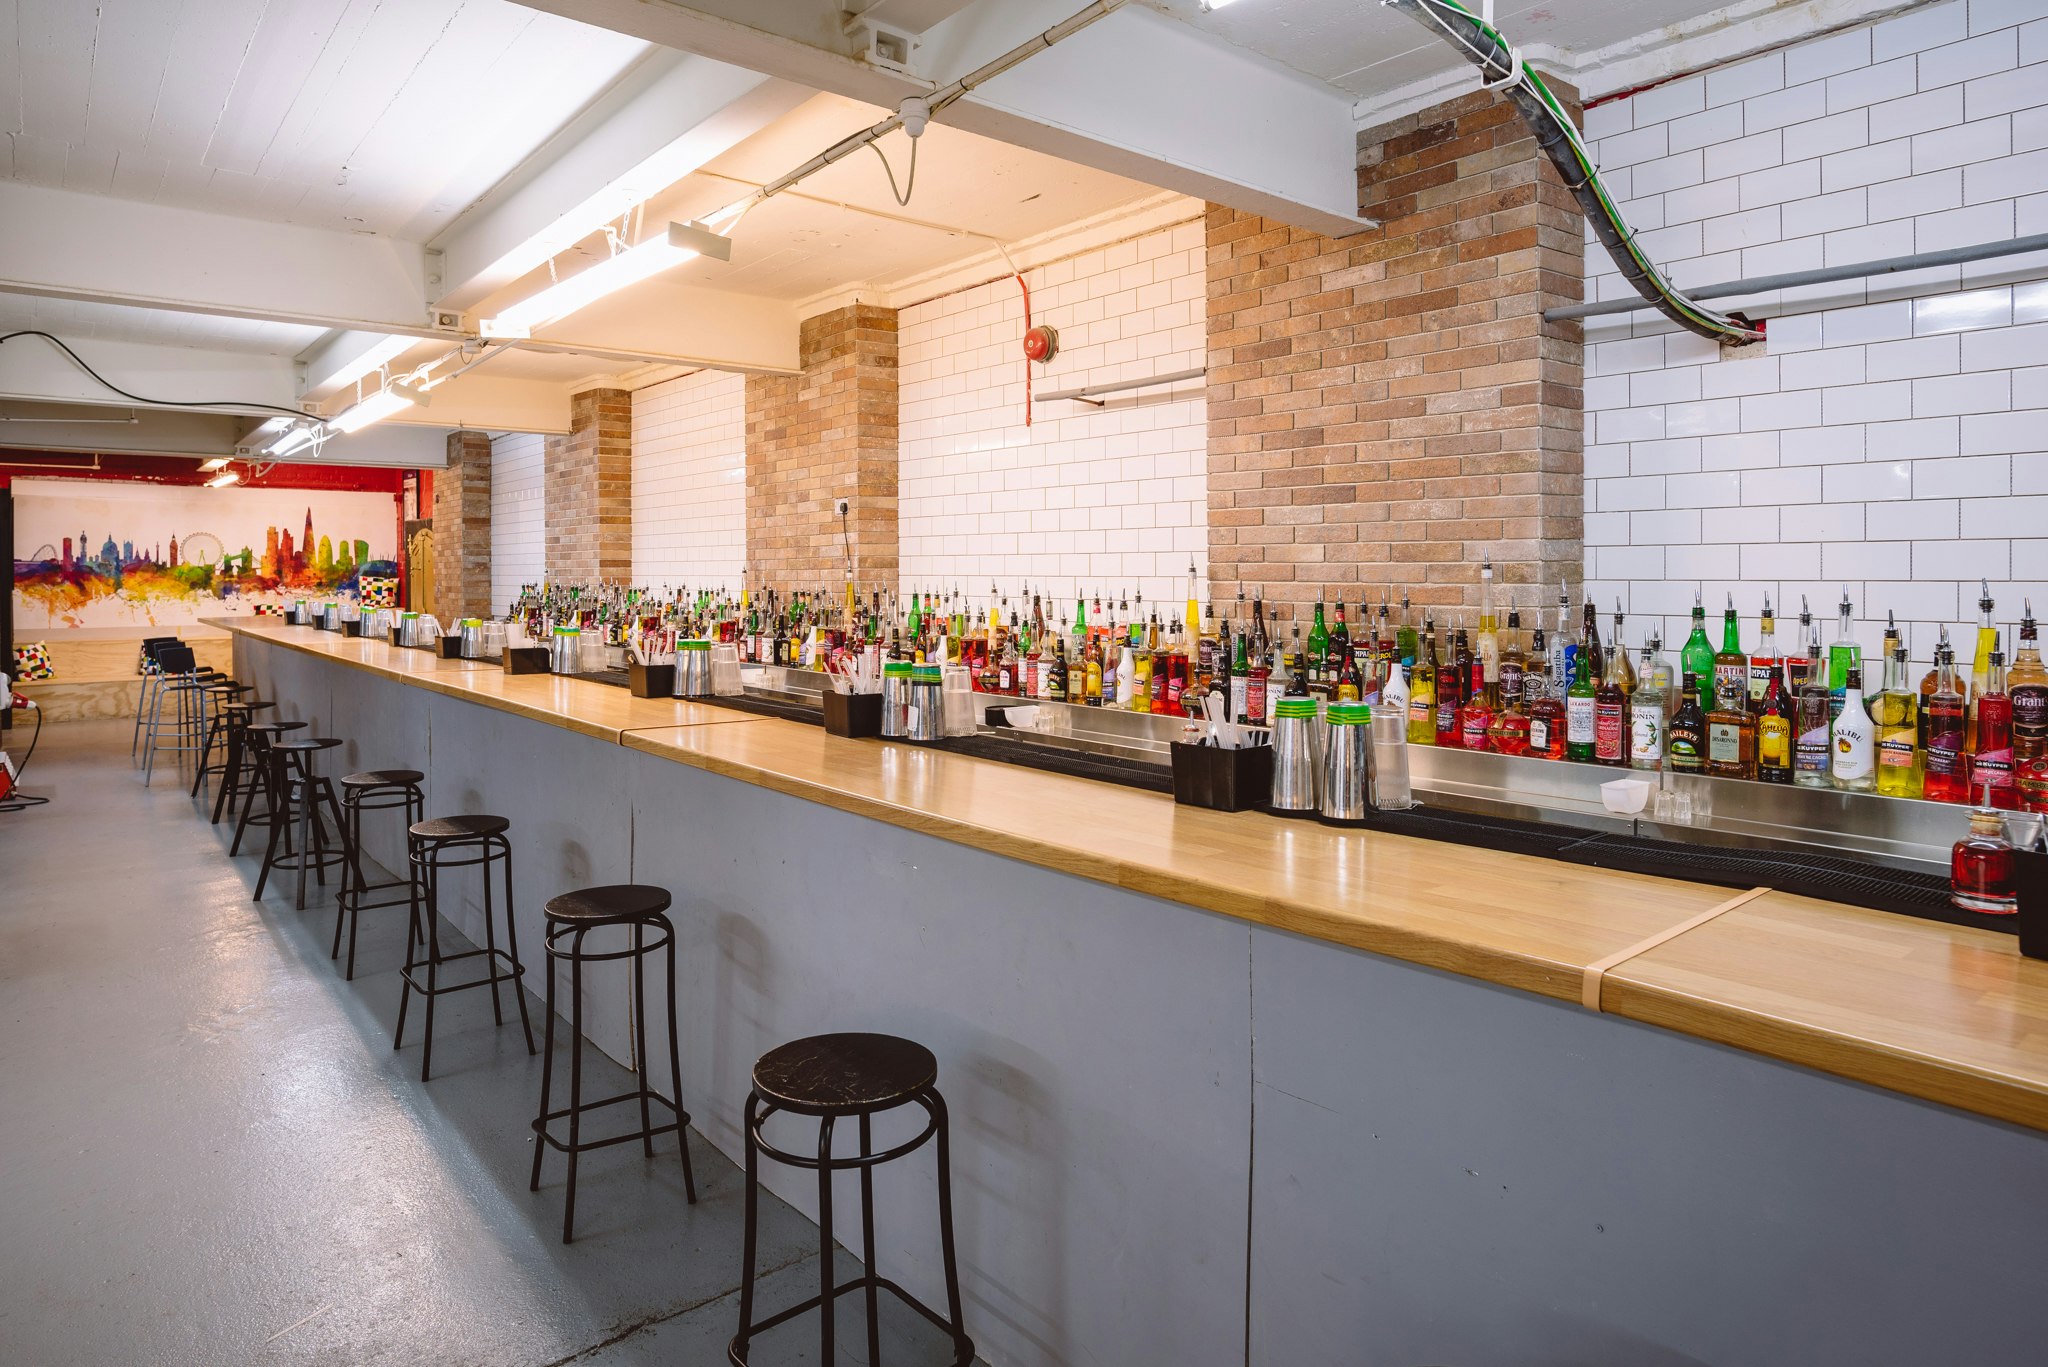 Corporate Team Building Venues in London - London Bartender School